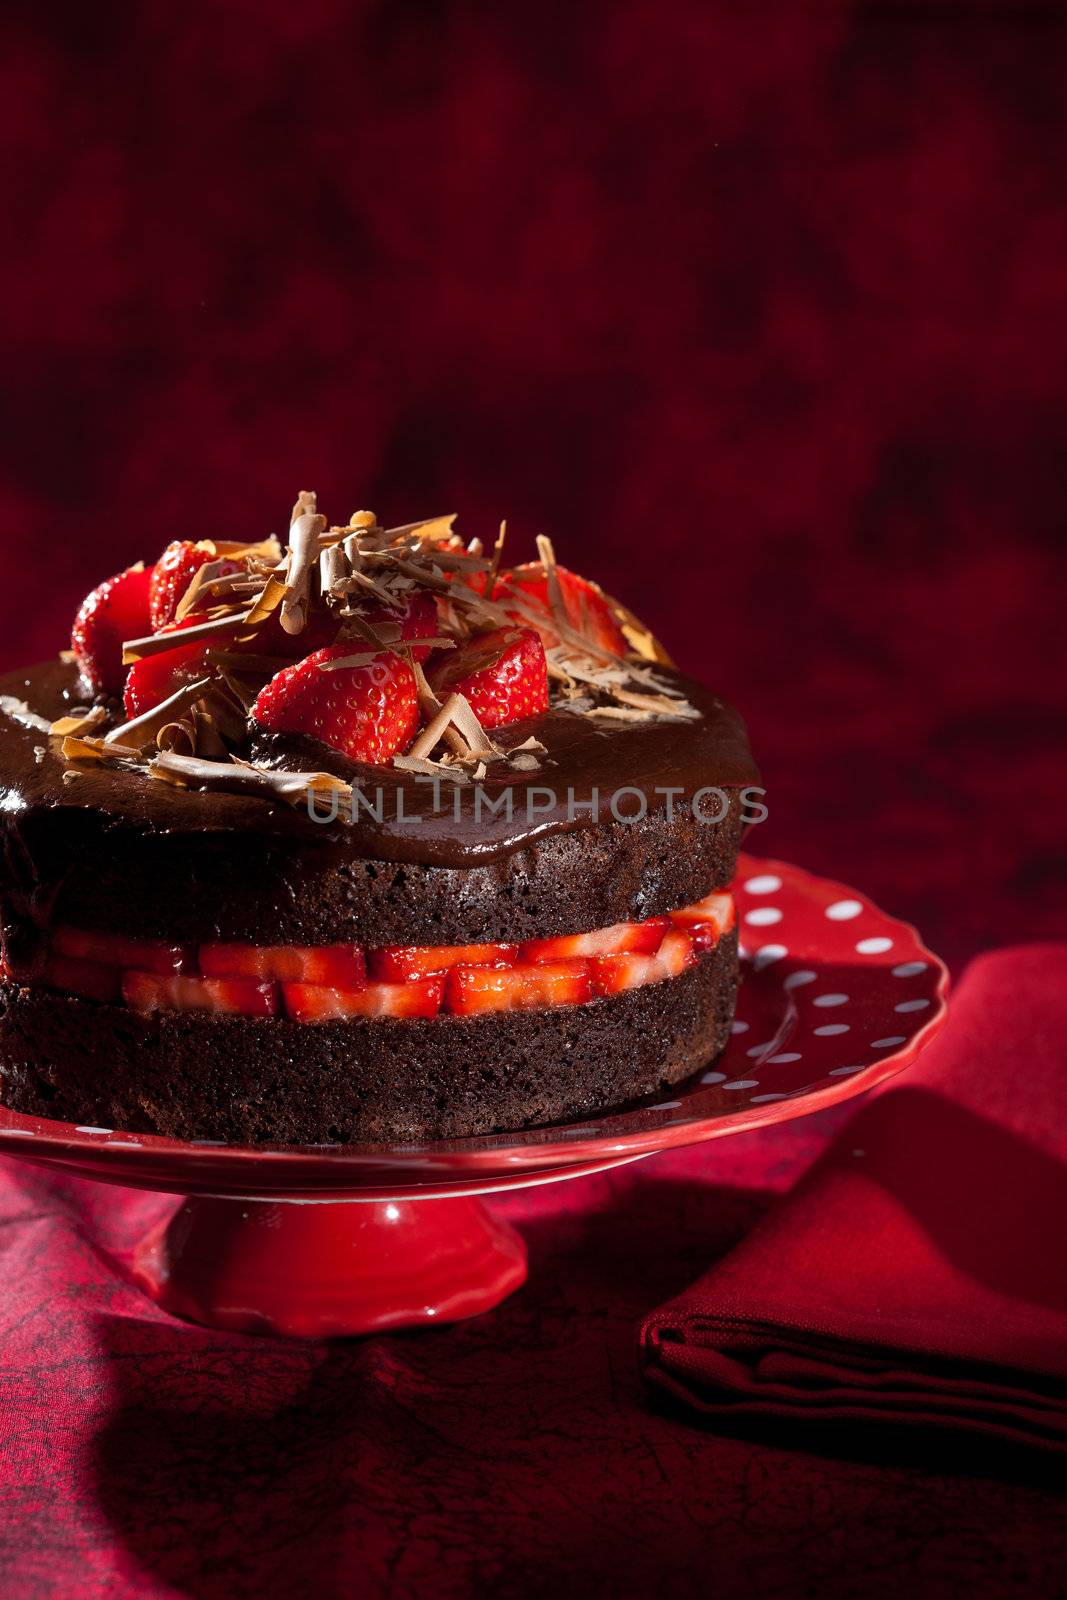 Chocolate strawberry cake by Fotosmurf